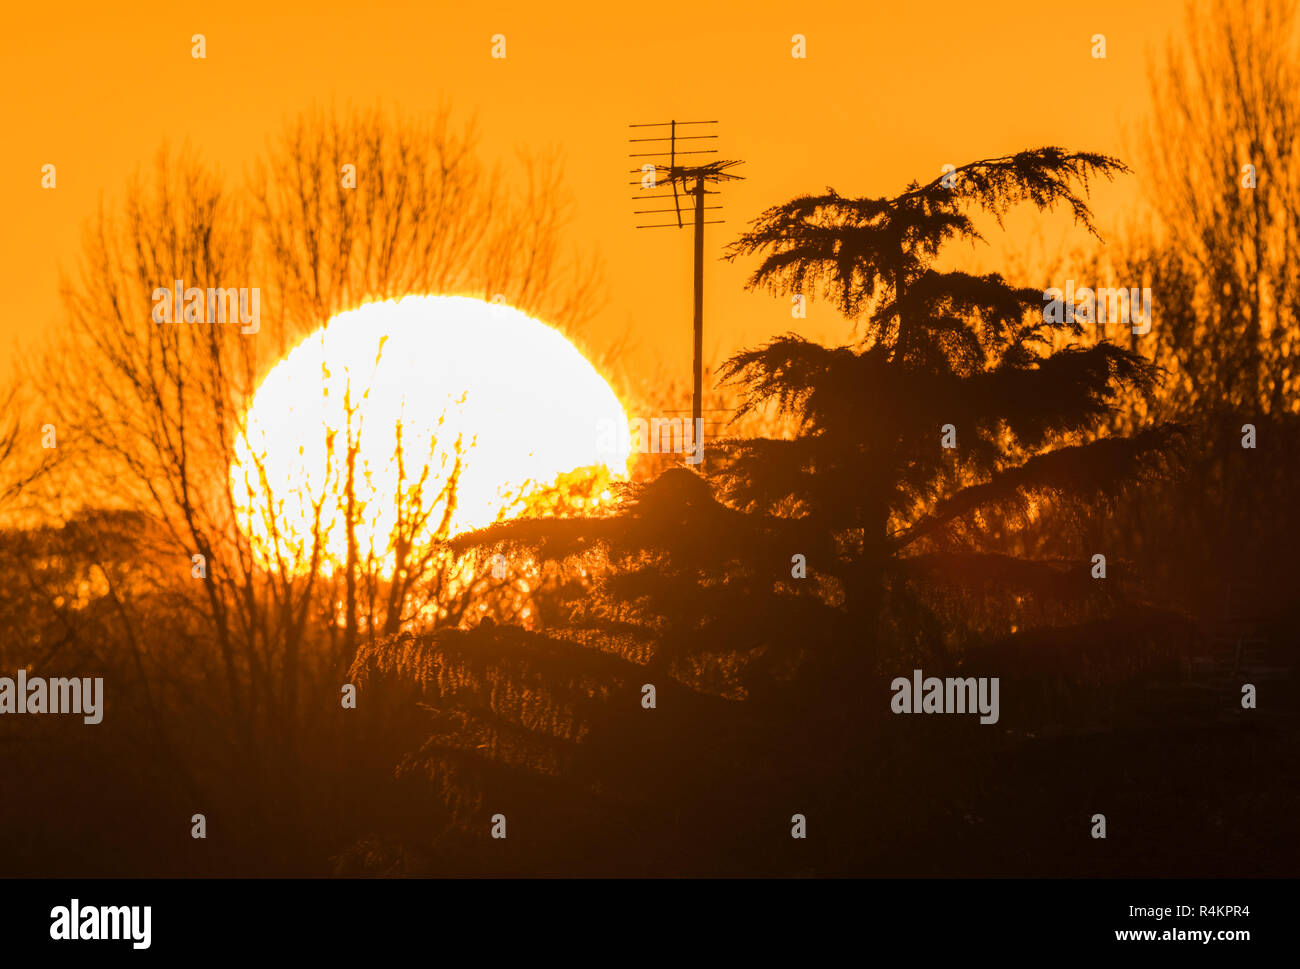 Grand soleil disparaître derrière les arbres pendant un coucher de soleil d'Automne dans le West Sussex, Angleterre, Royaume-Uni. Banque D'Images